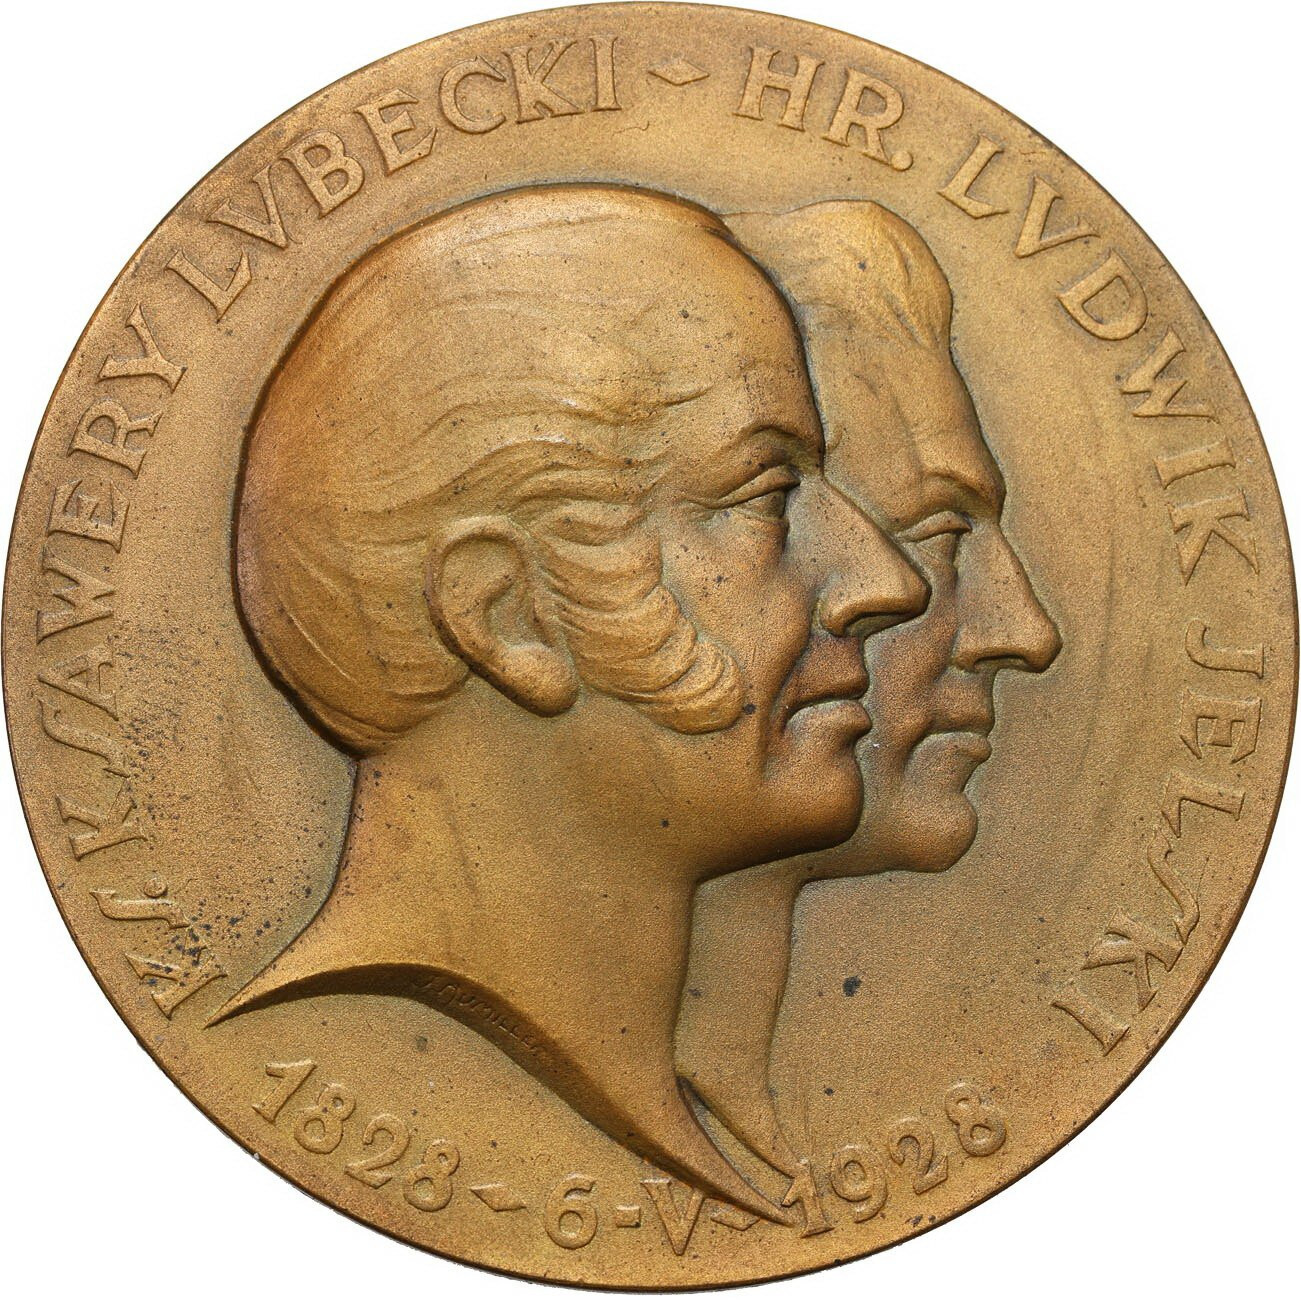 II RP. Medal 1928 - Stulecie Banku Polskiego w pudełku Mennicy Państwowej